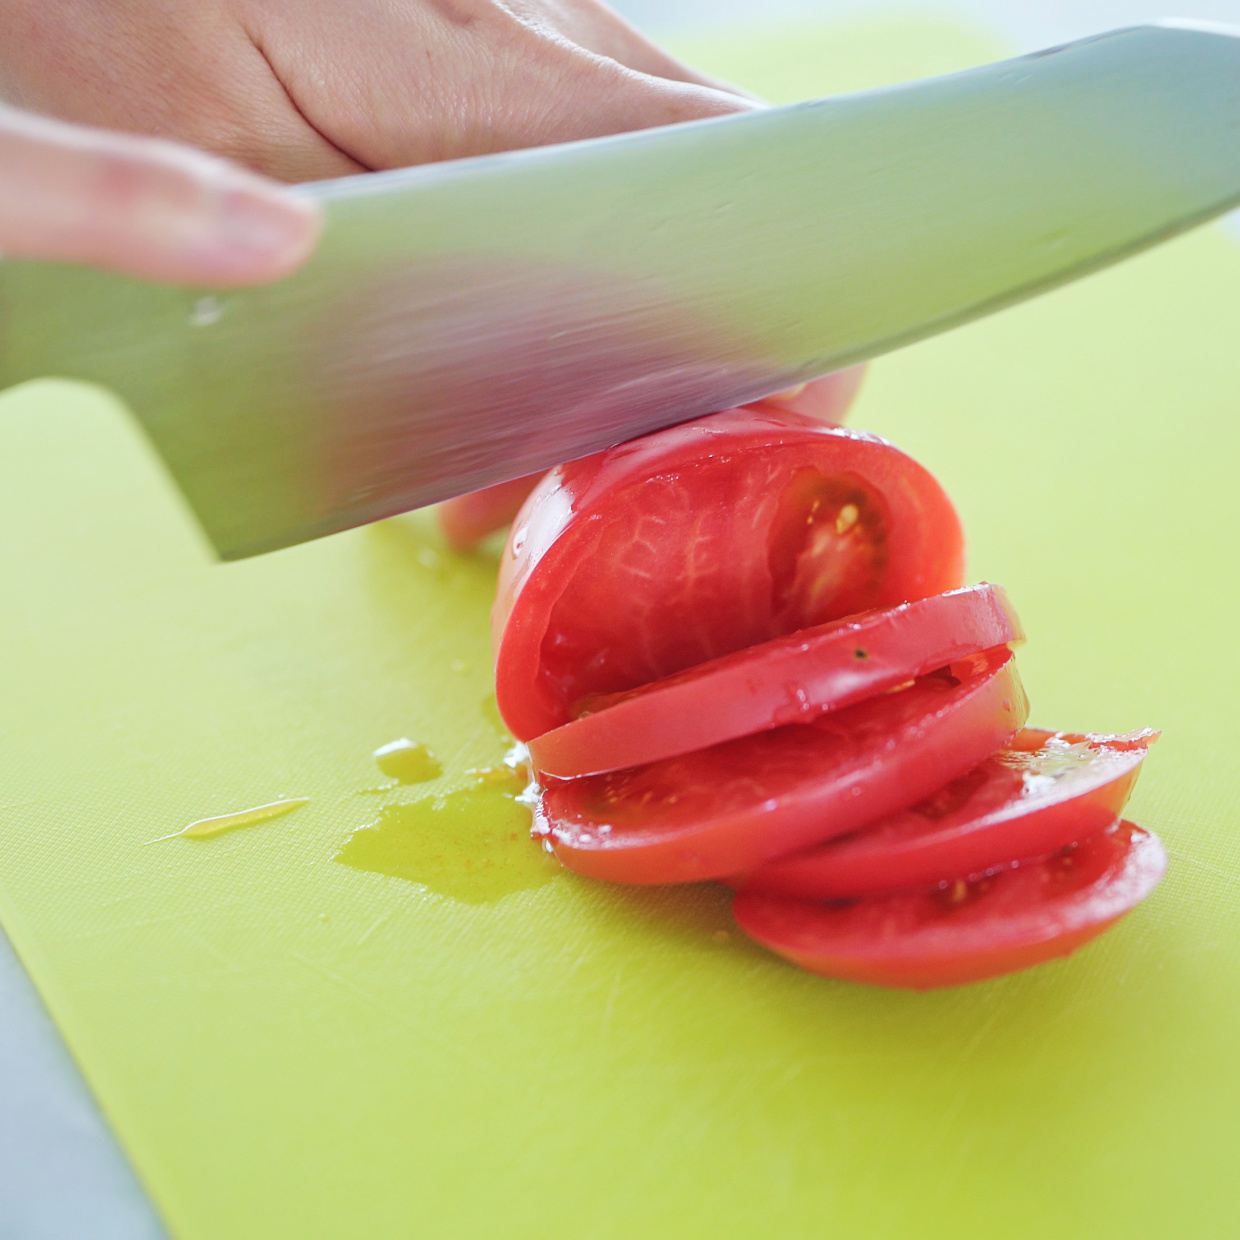  トマトの中身が飛び出ない超簡単な切り方とは？ 